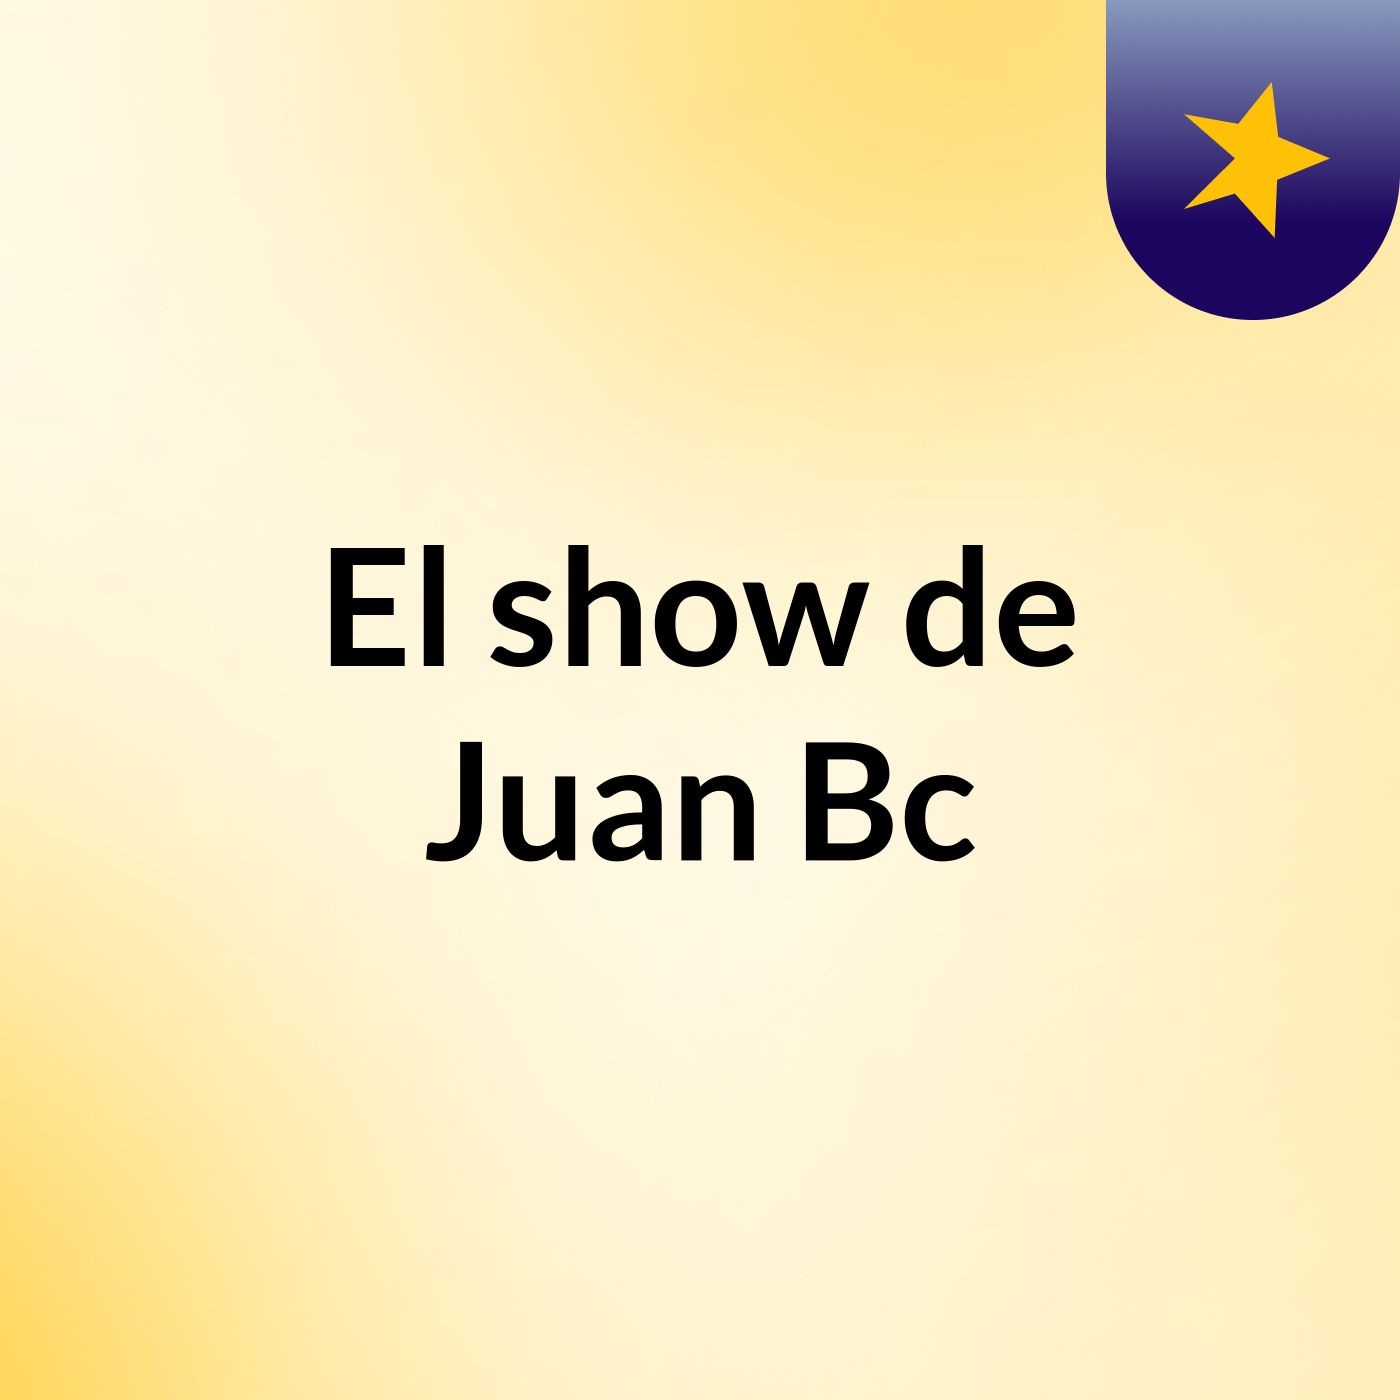 Episodio 2 - El show de Juan Bc